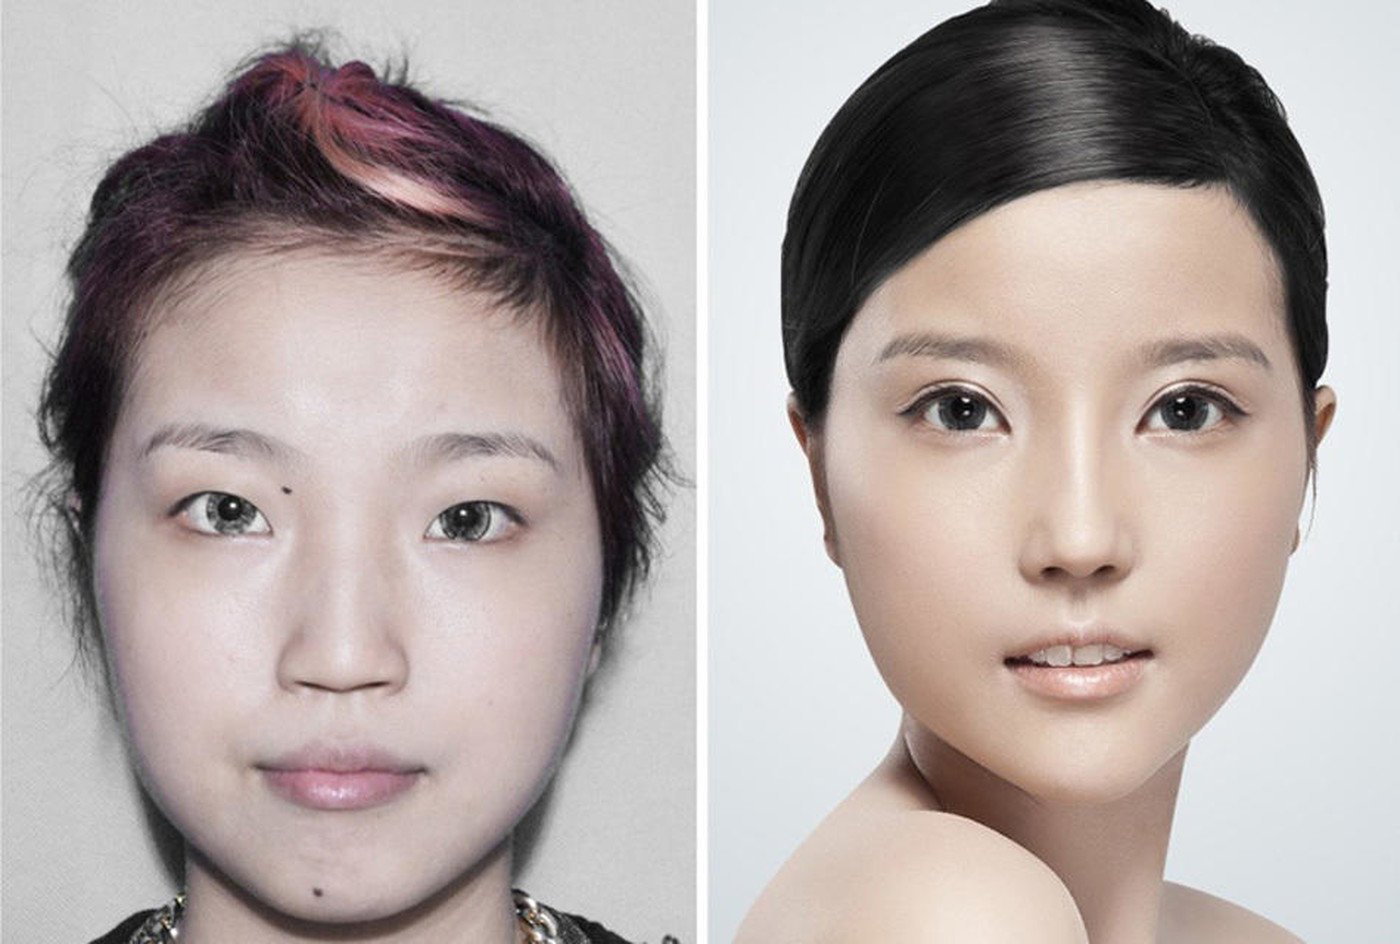 Узкий разрез глаз какая раса. Пластика азиатских век сингапури. Кореянки до и после операции. Кореянки до и после пластики глаз. Азиаты до и после пластики.